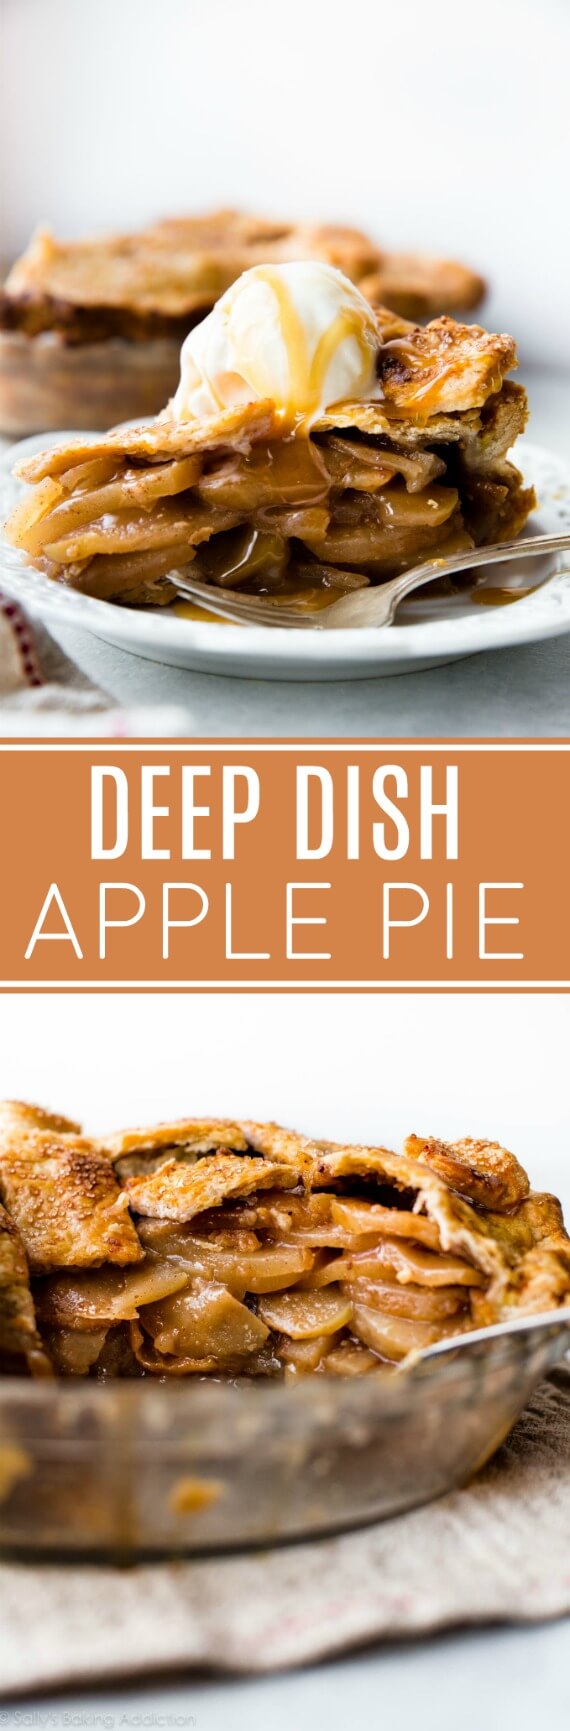 Plat à tarte aux pommes avec des couches et des couches de délicieuses tranches de pomme et une croûte de tarte feuilletée au beurre! Recette sur sallysbakingaddiction.com